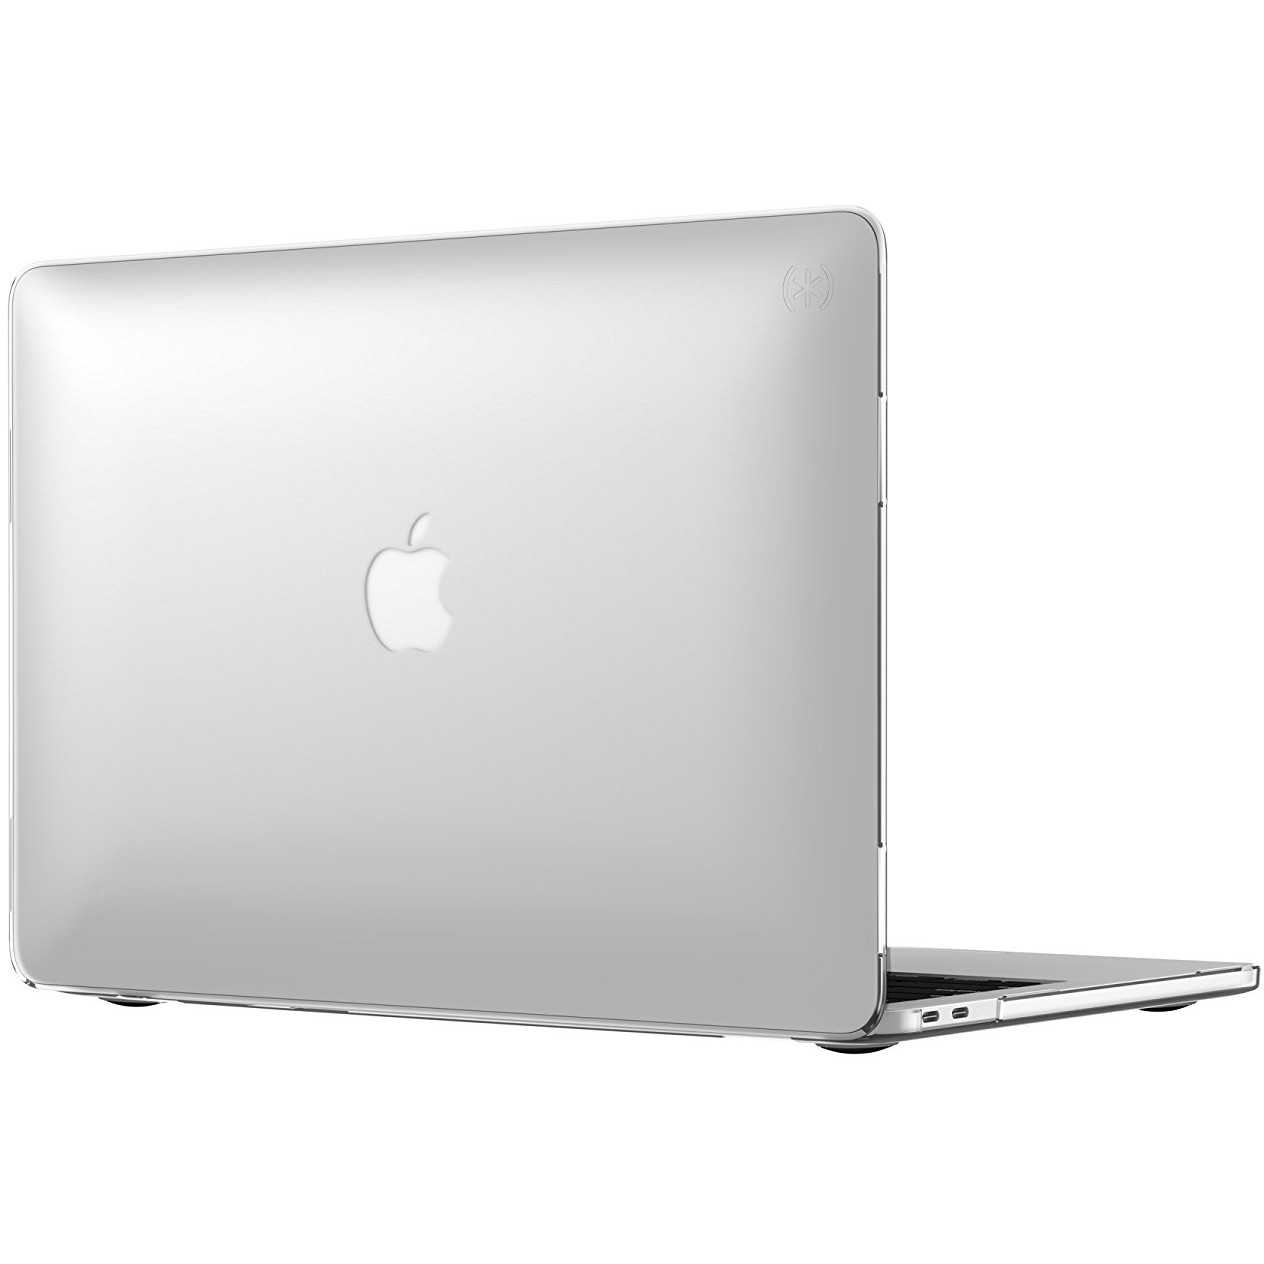 Поспели! обзор ноутбуков apple macbook air 11 и macbook air 13 образца 2012 года